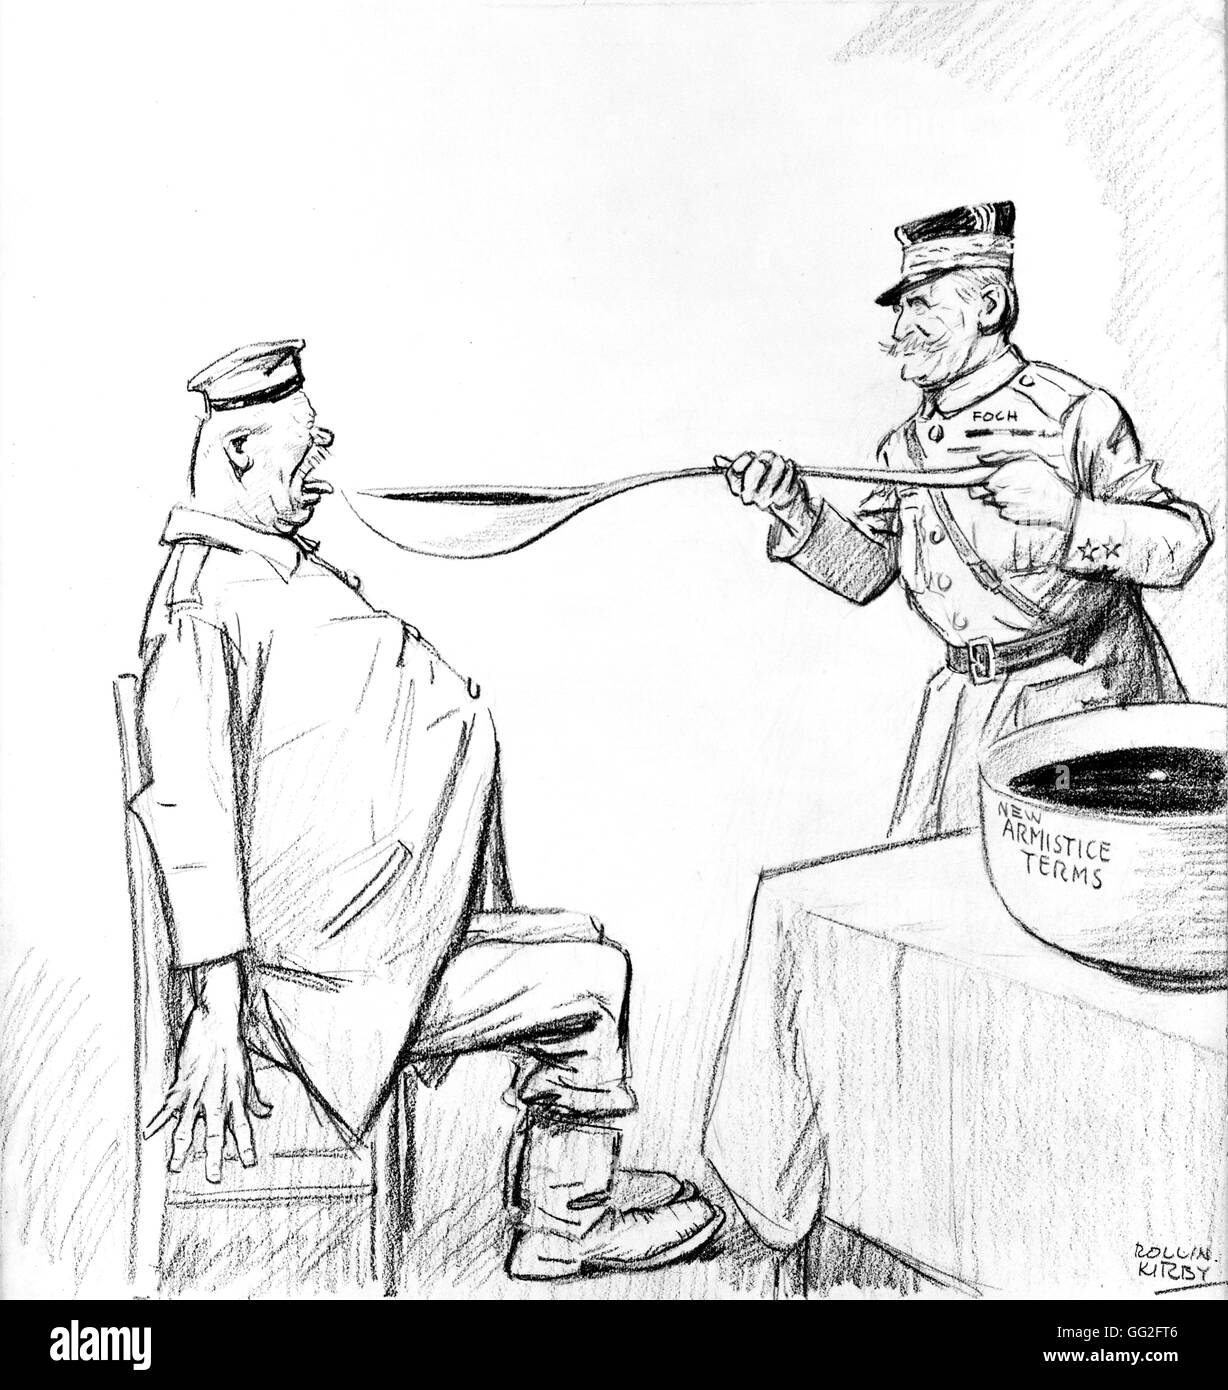 Première Guerre mondiale. Caricature de Kirby : Foch et le traité d'Armistice imposé à l'Allemagne, 11 novembre 1918. Banque D'Images